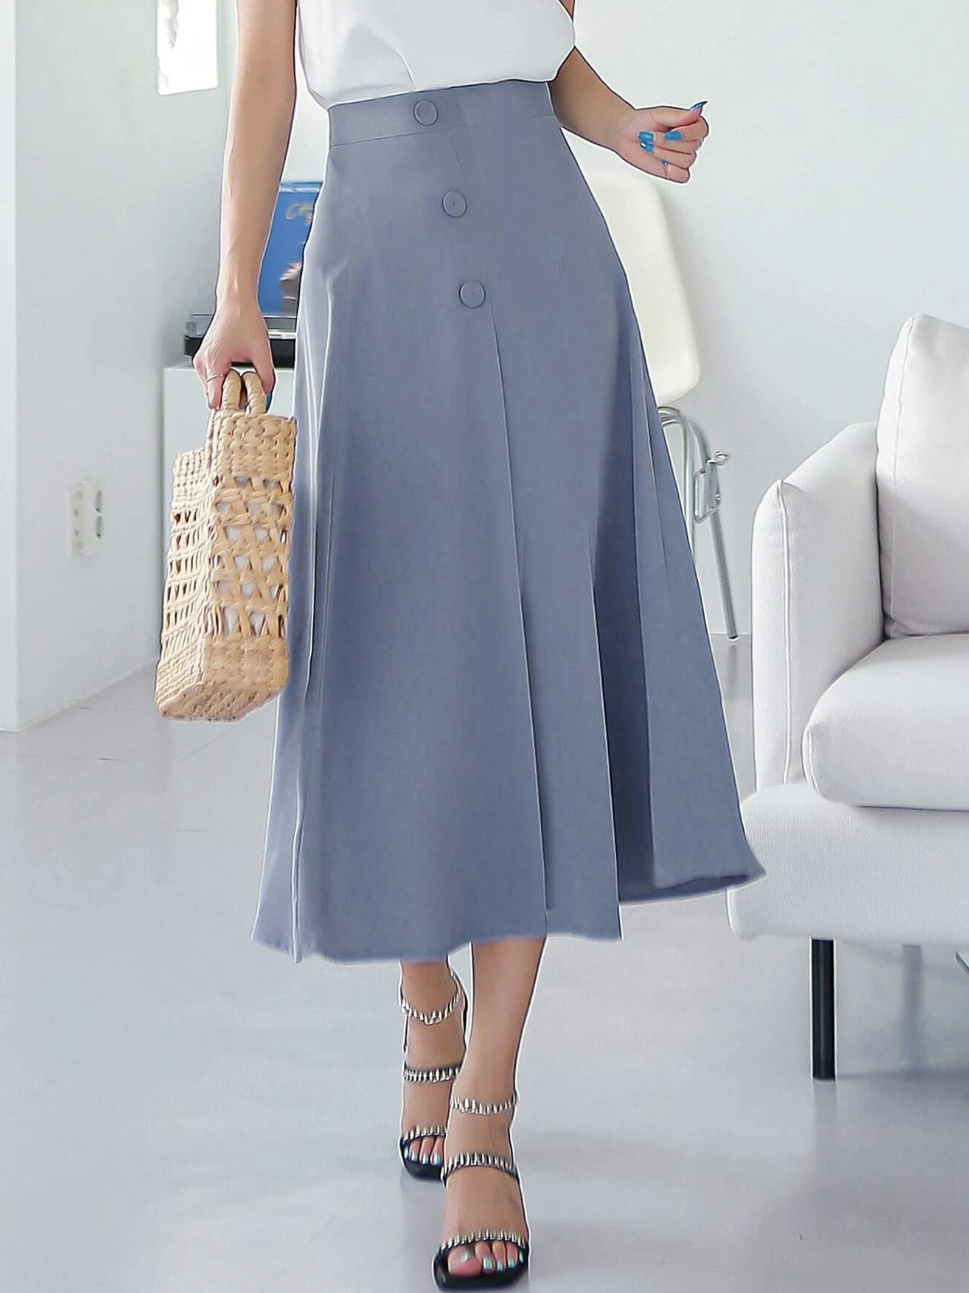 Nếu chuộng phong cách tối giản thanh lịch, bạn hãy học cách sắm đồ giống nữ blogger người Hàn này - Ảnh 23.